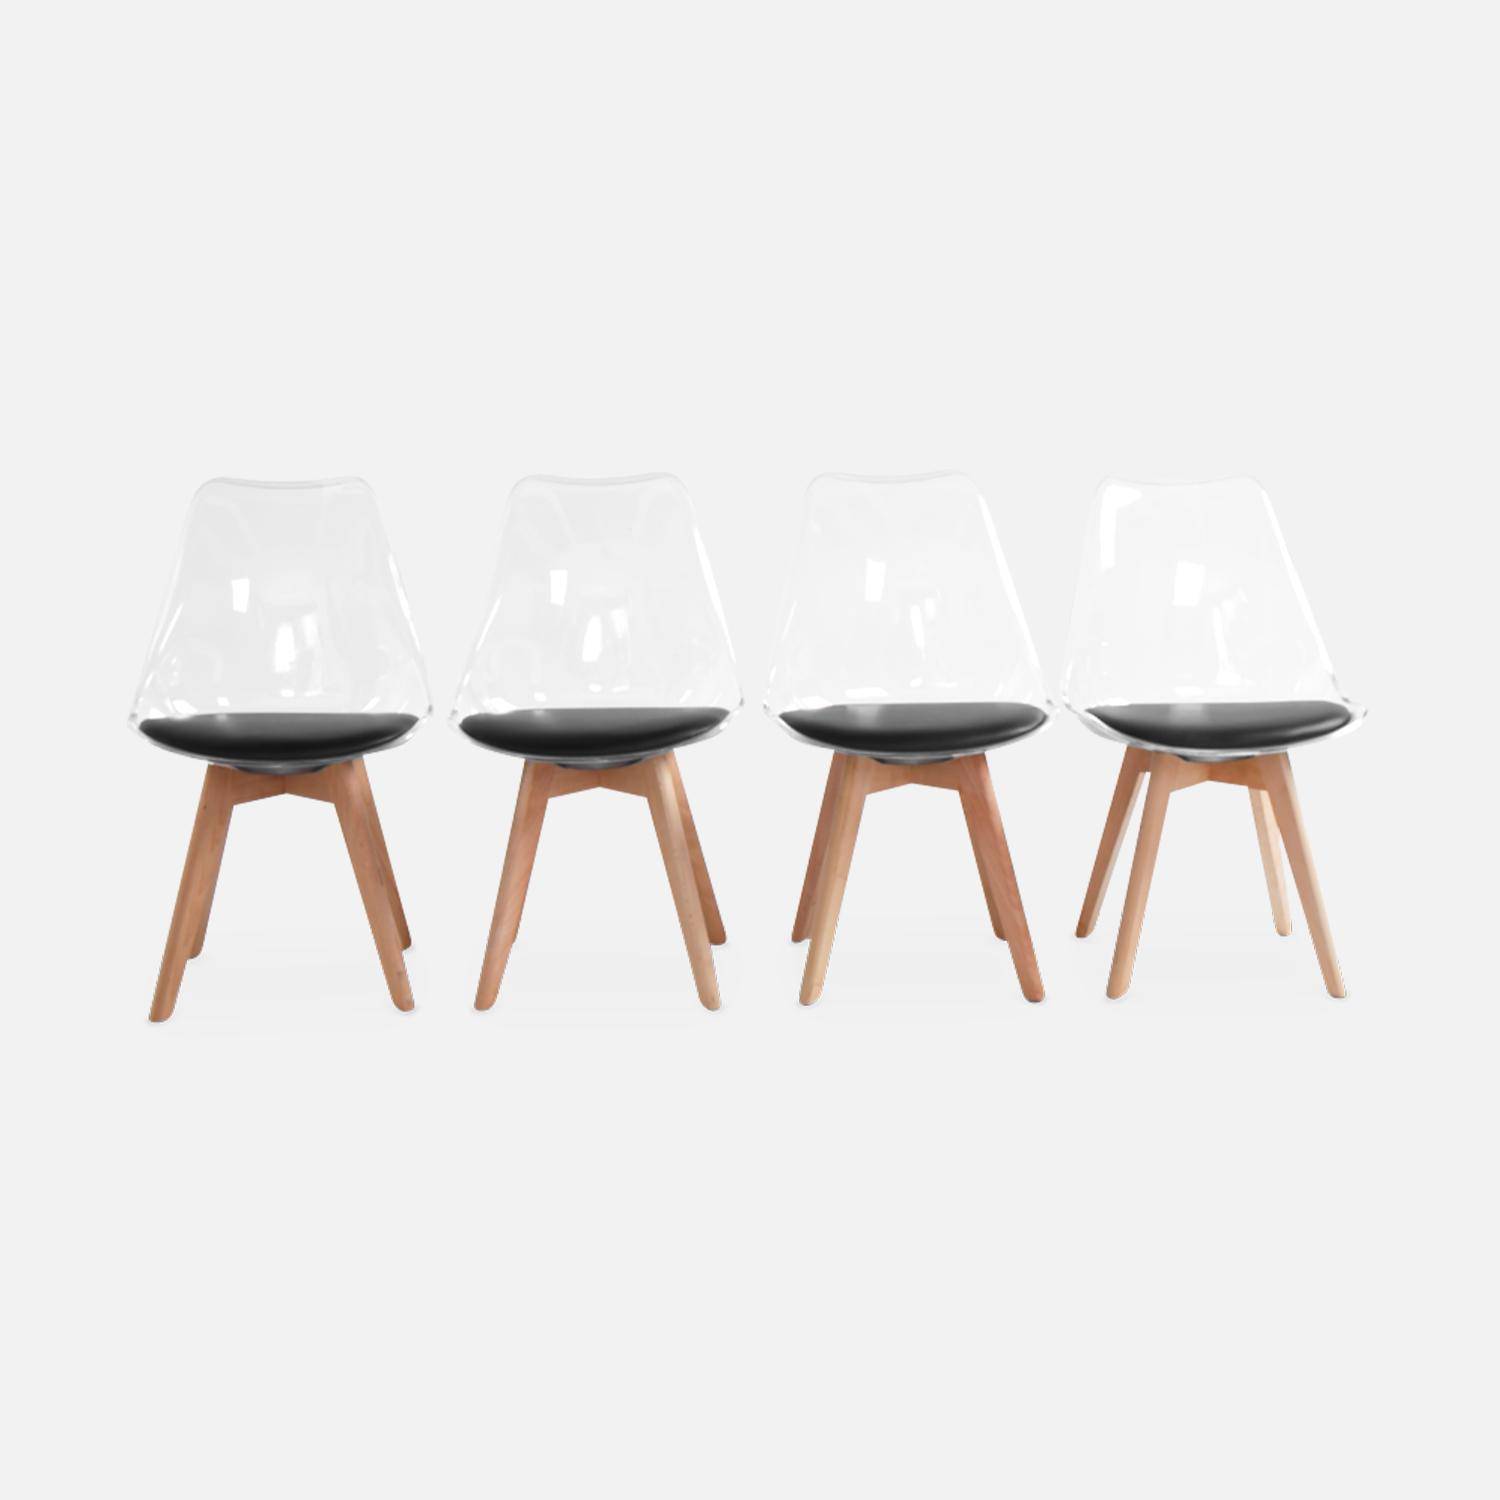 4er Set Stühle im skandinavischen Stil - Lagertha - Holzbeine, Ein Sitz, schwarzes Kissen, transparente Sitzschale Photo4